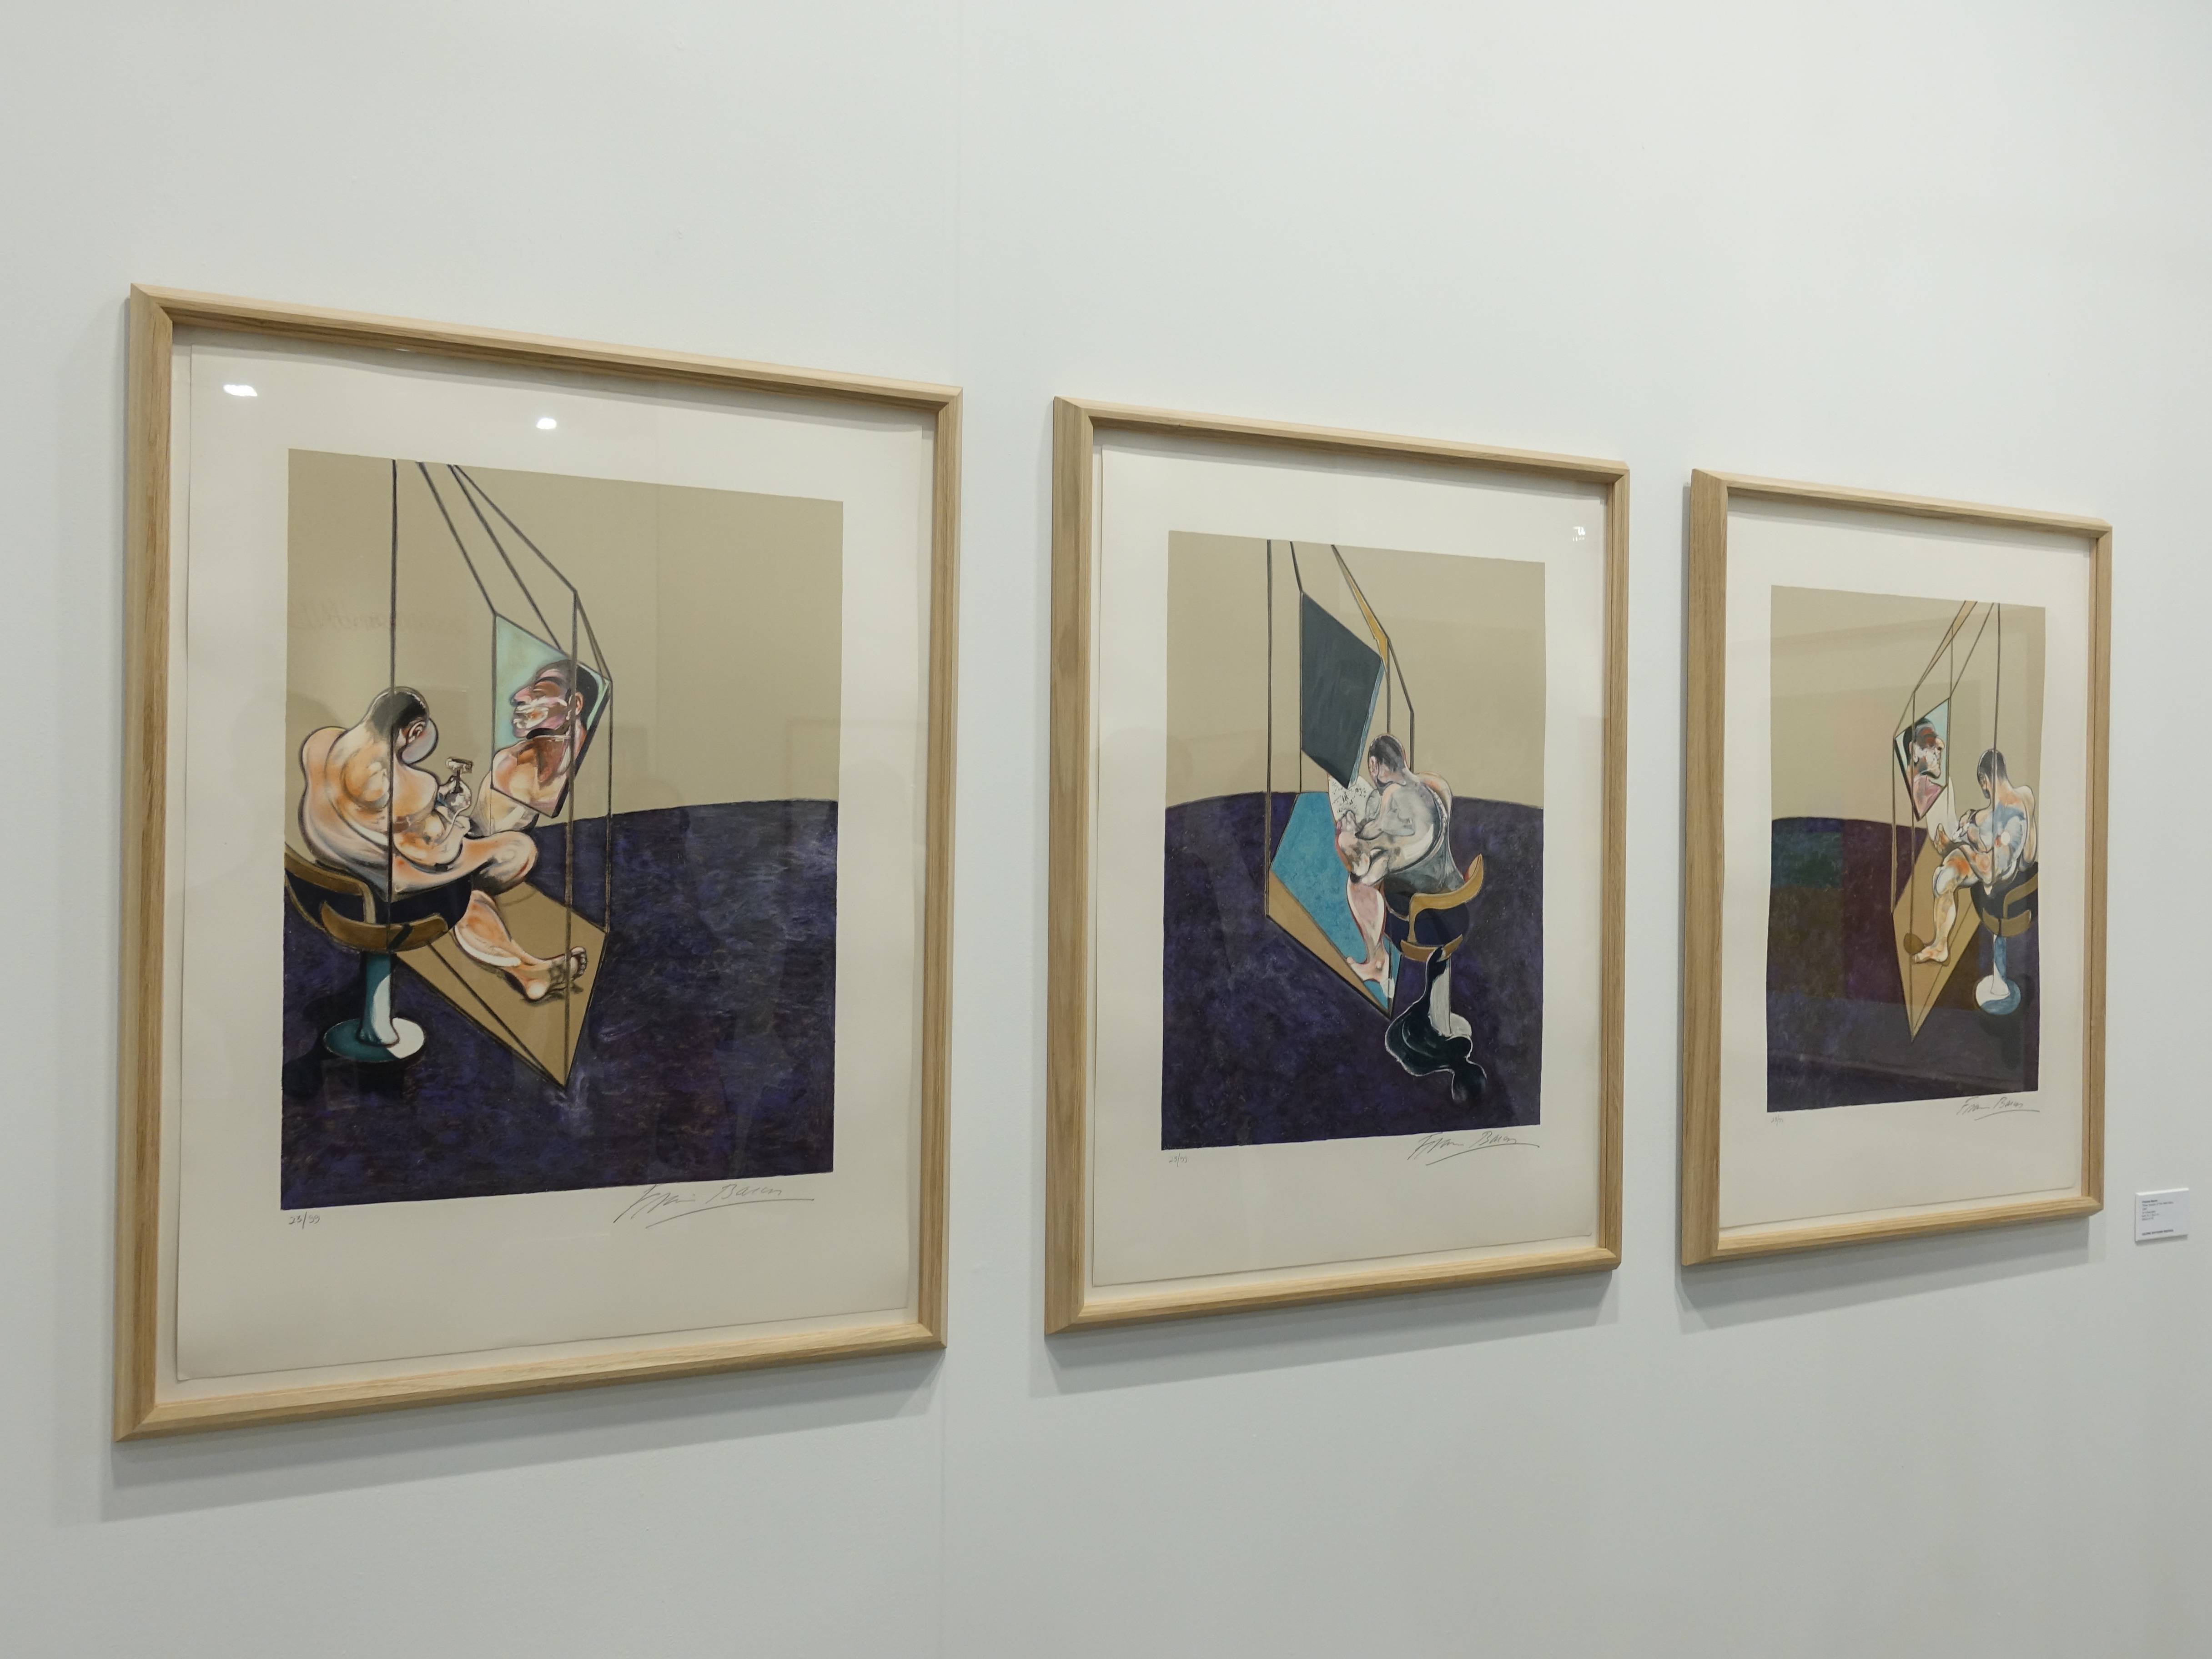 Lelong畫廊展出藝術家法蘭西斯培根作品。